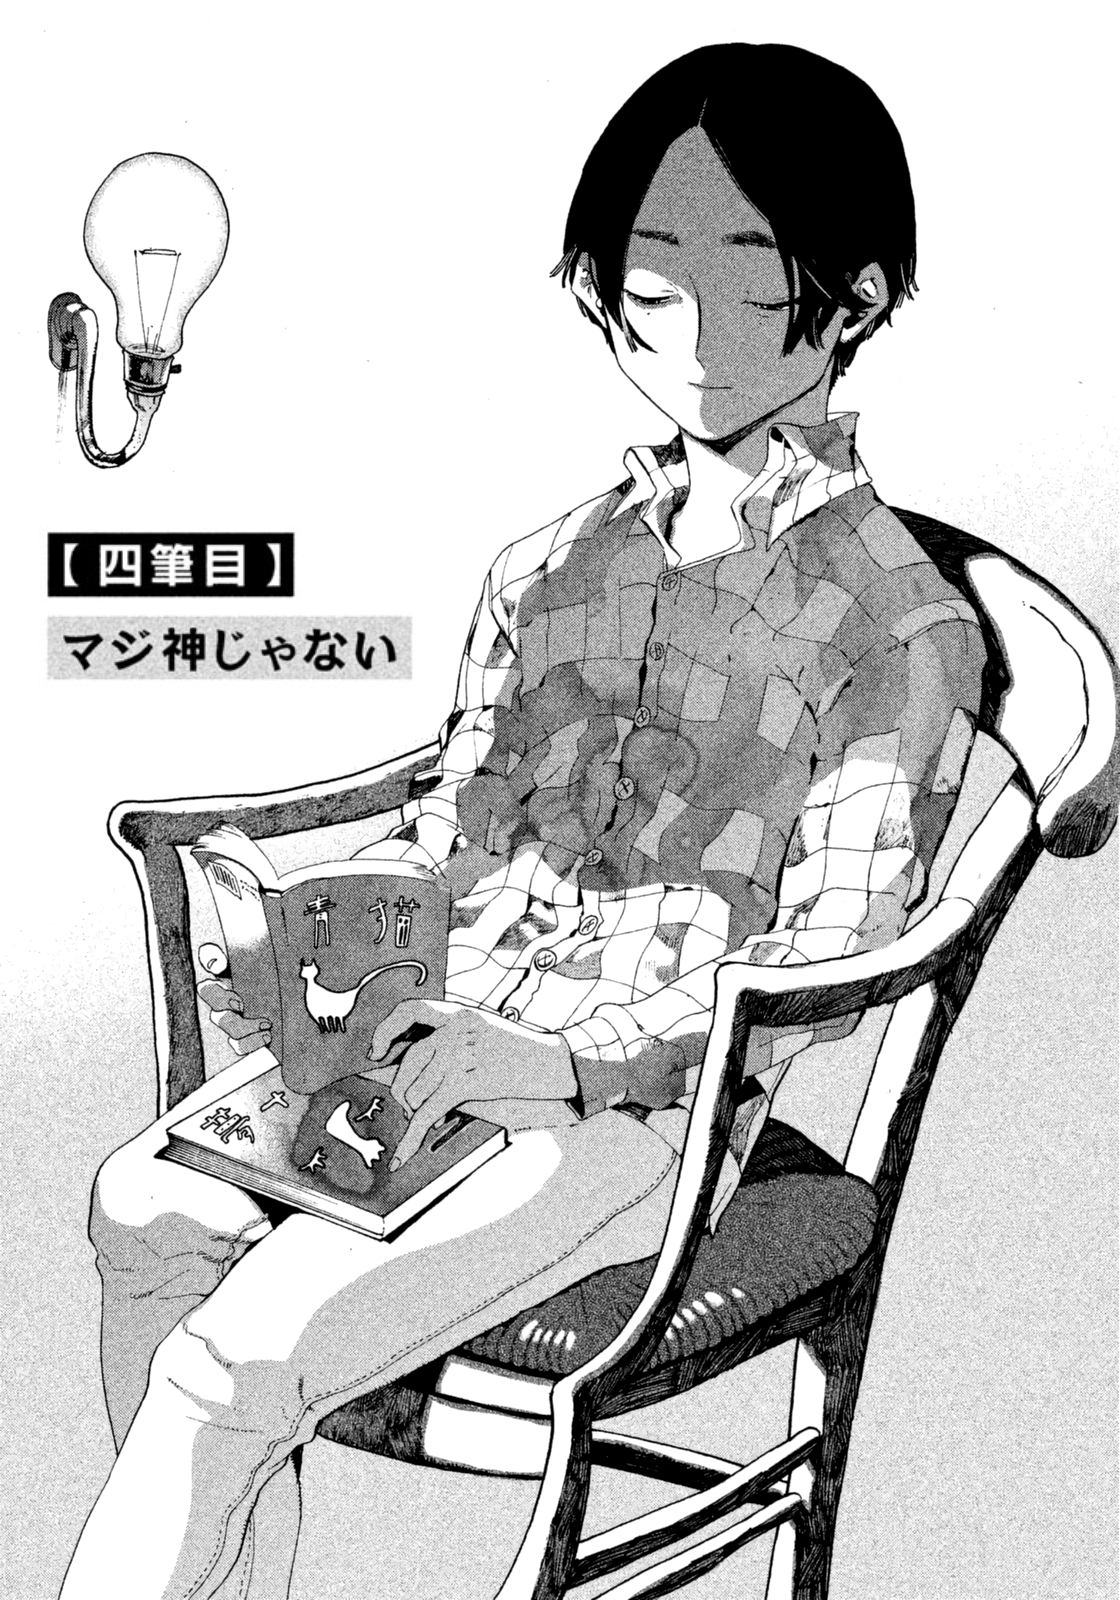 Blue Period Manga Volume 8 | Anime wall prints !!, Manga covers, Anime wall  art